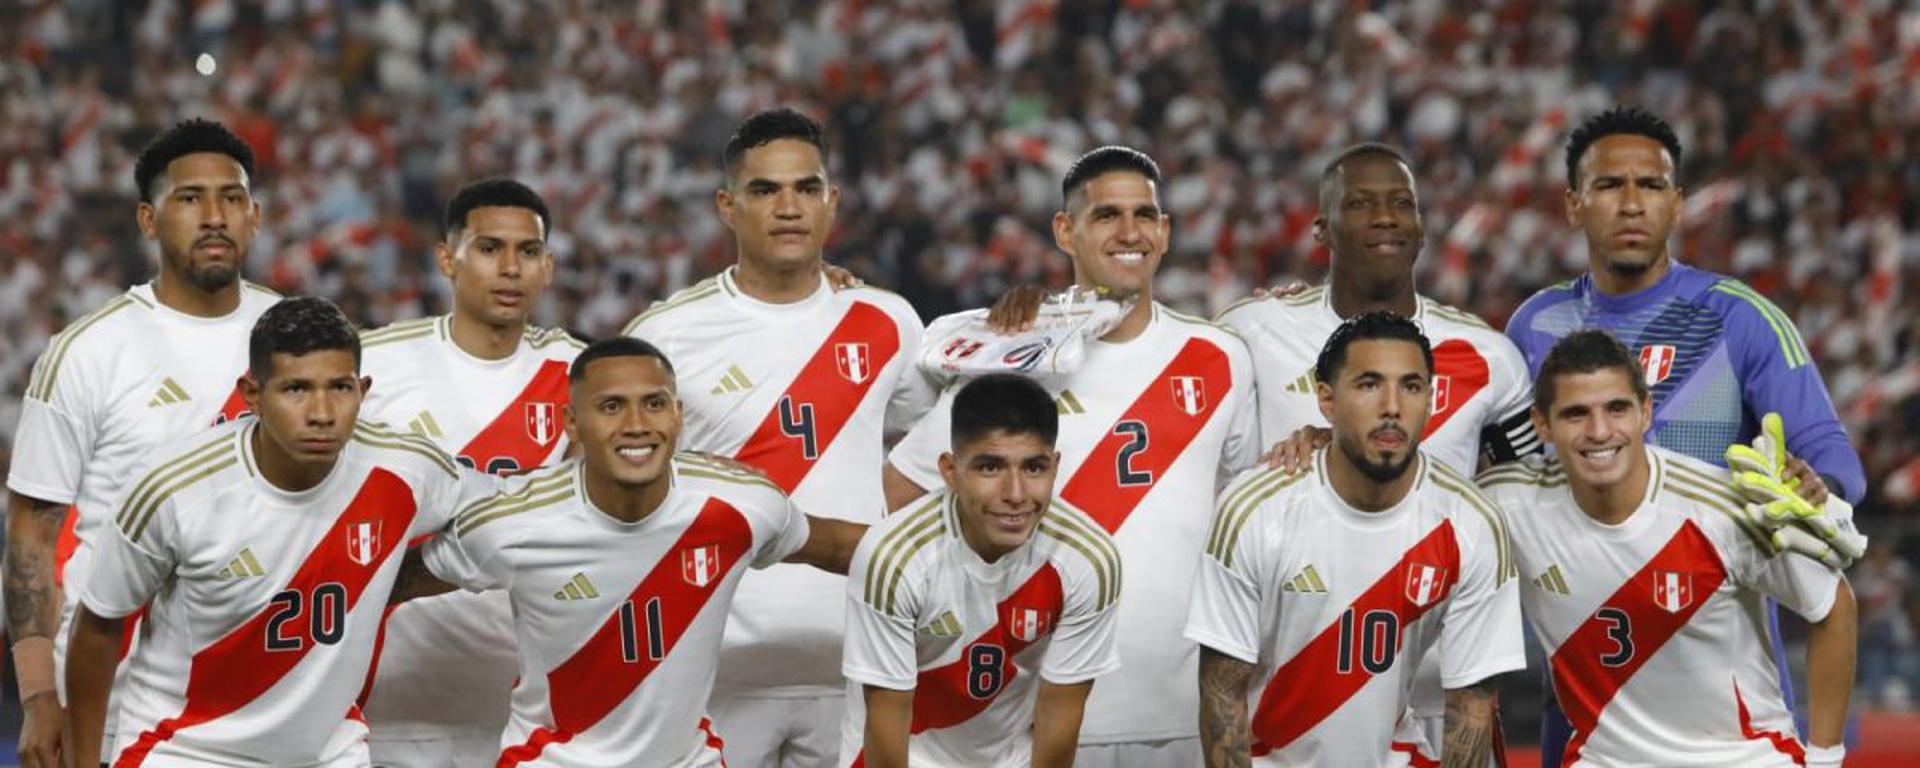 Quispe ilusiona y Paolo anota su histórico gol 40: UnoxUno del triunfo de Perú sobre Dominicana para empezar en paz la era Fossati